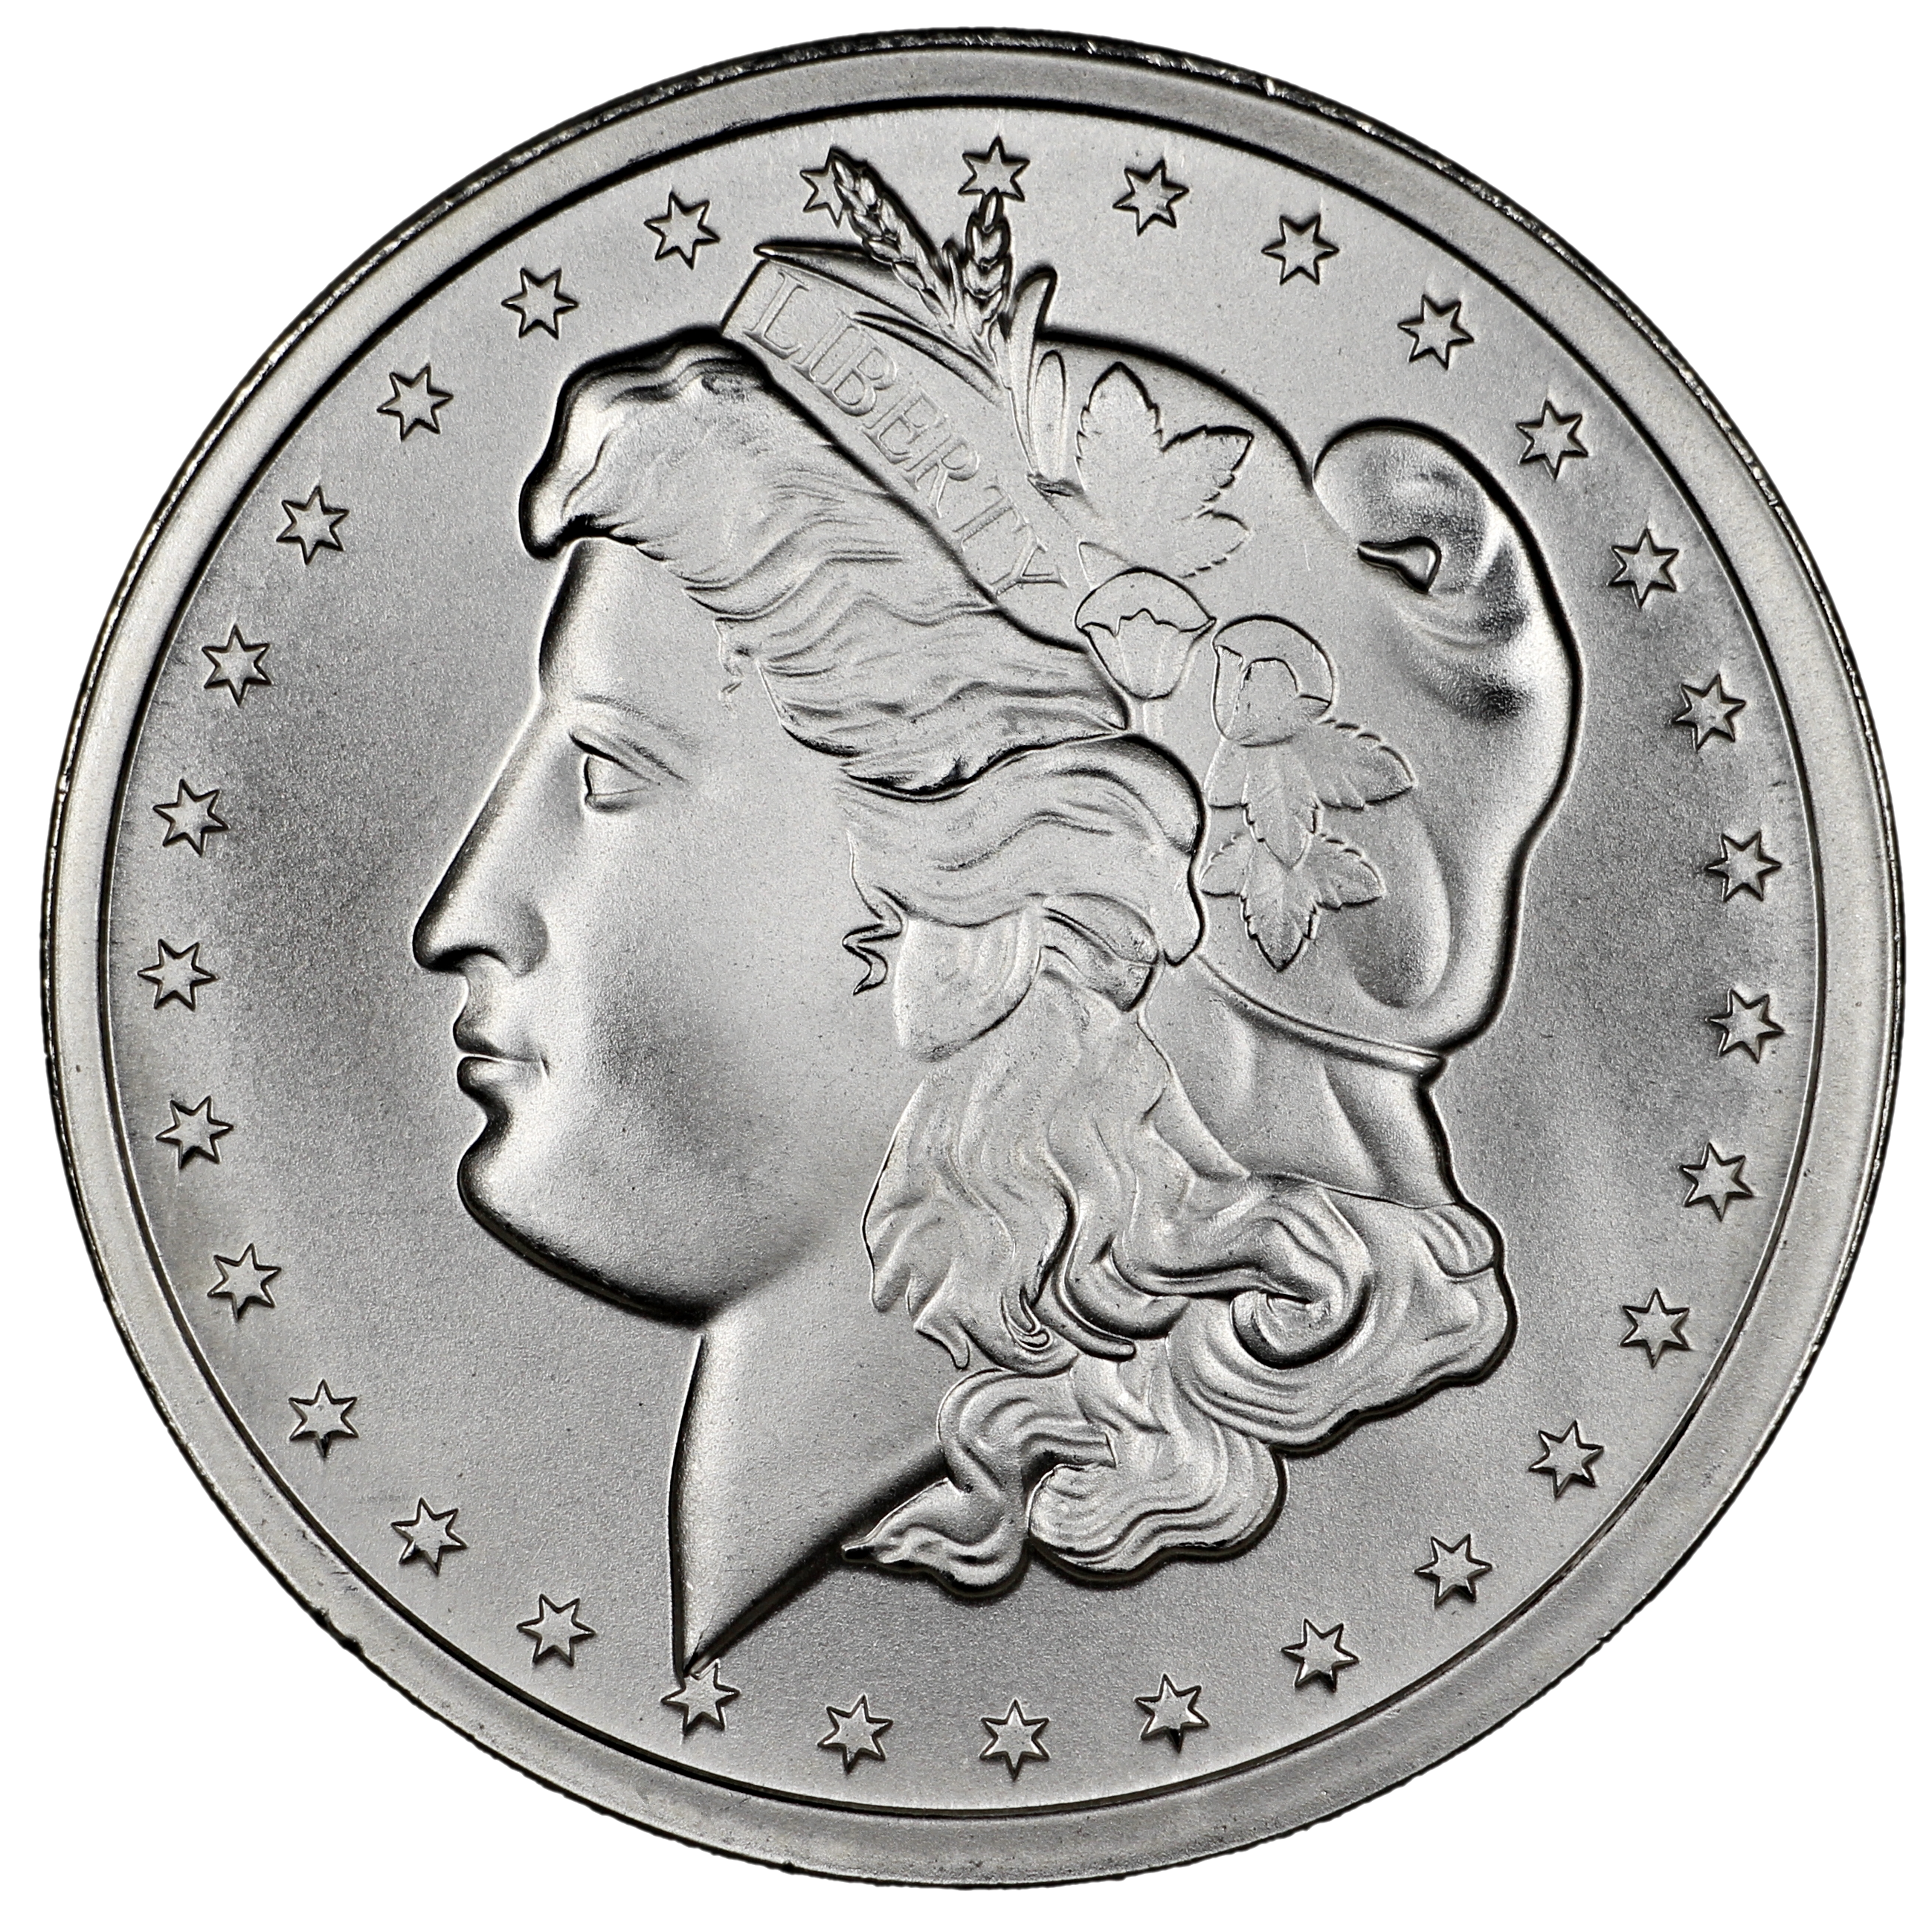 1 Ounce Silver Round Morgan Dollar Design